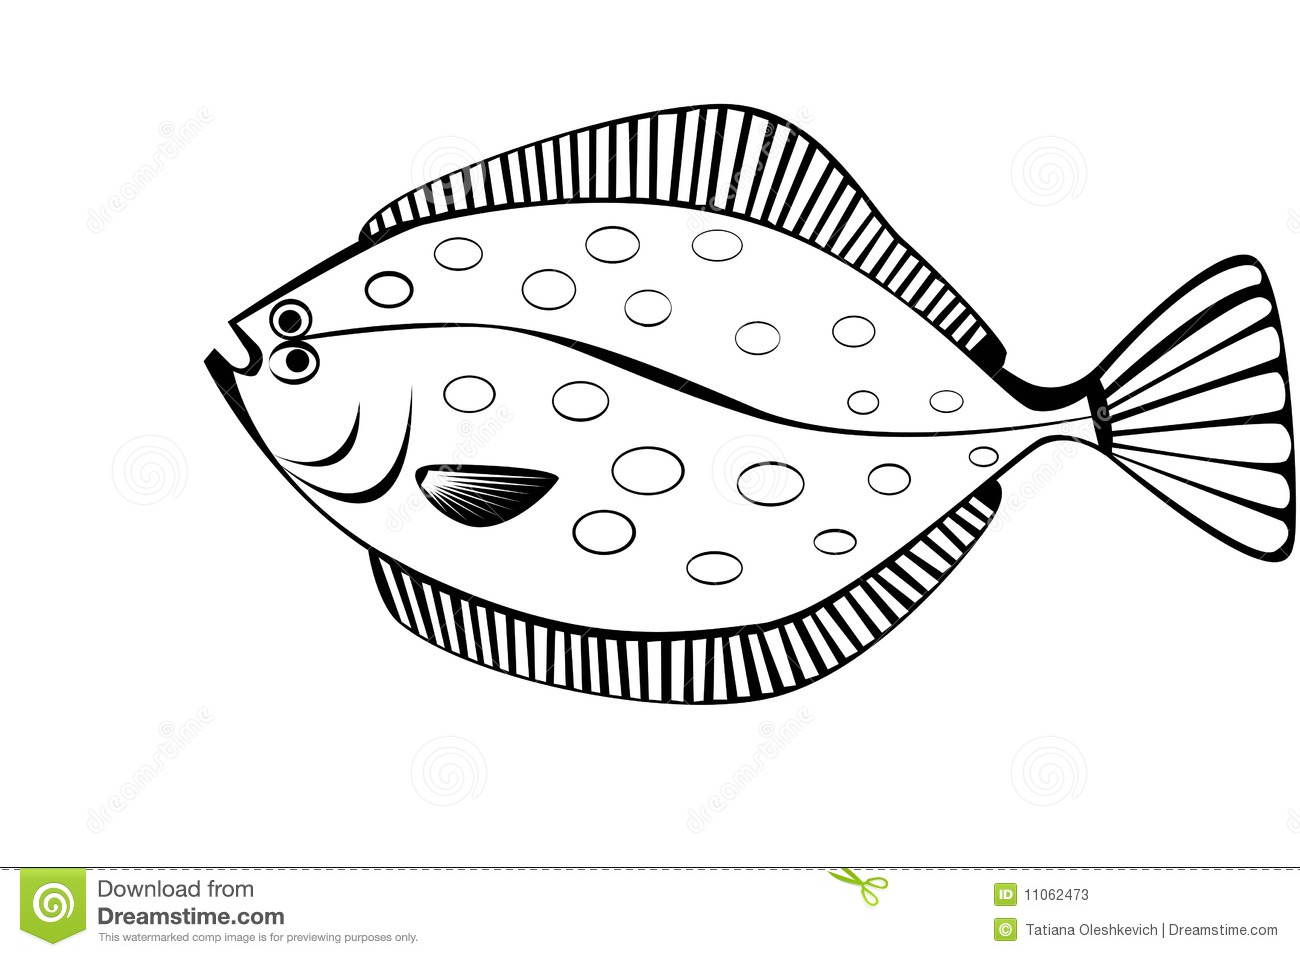 Stylish illustration of flounder isolate Stock Photos